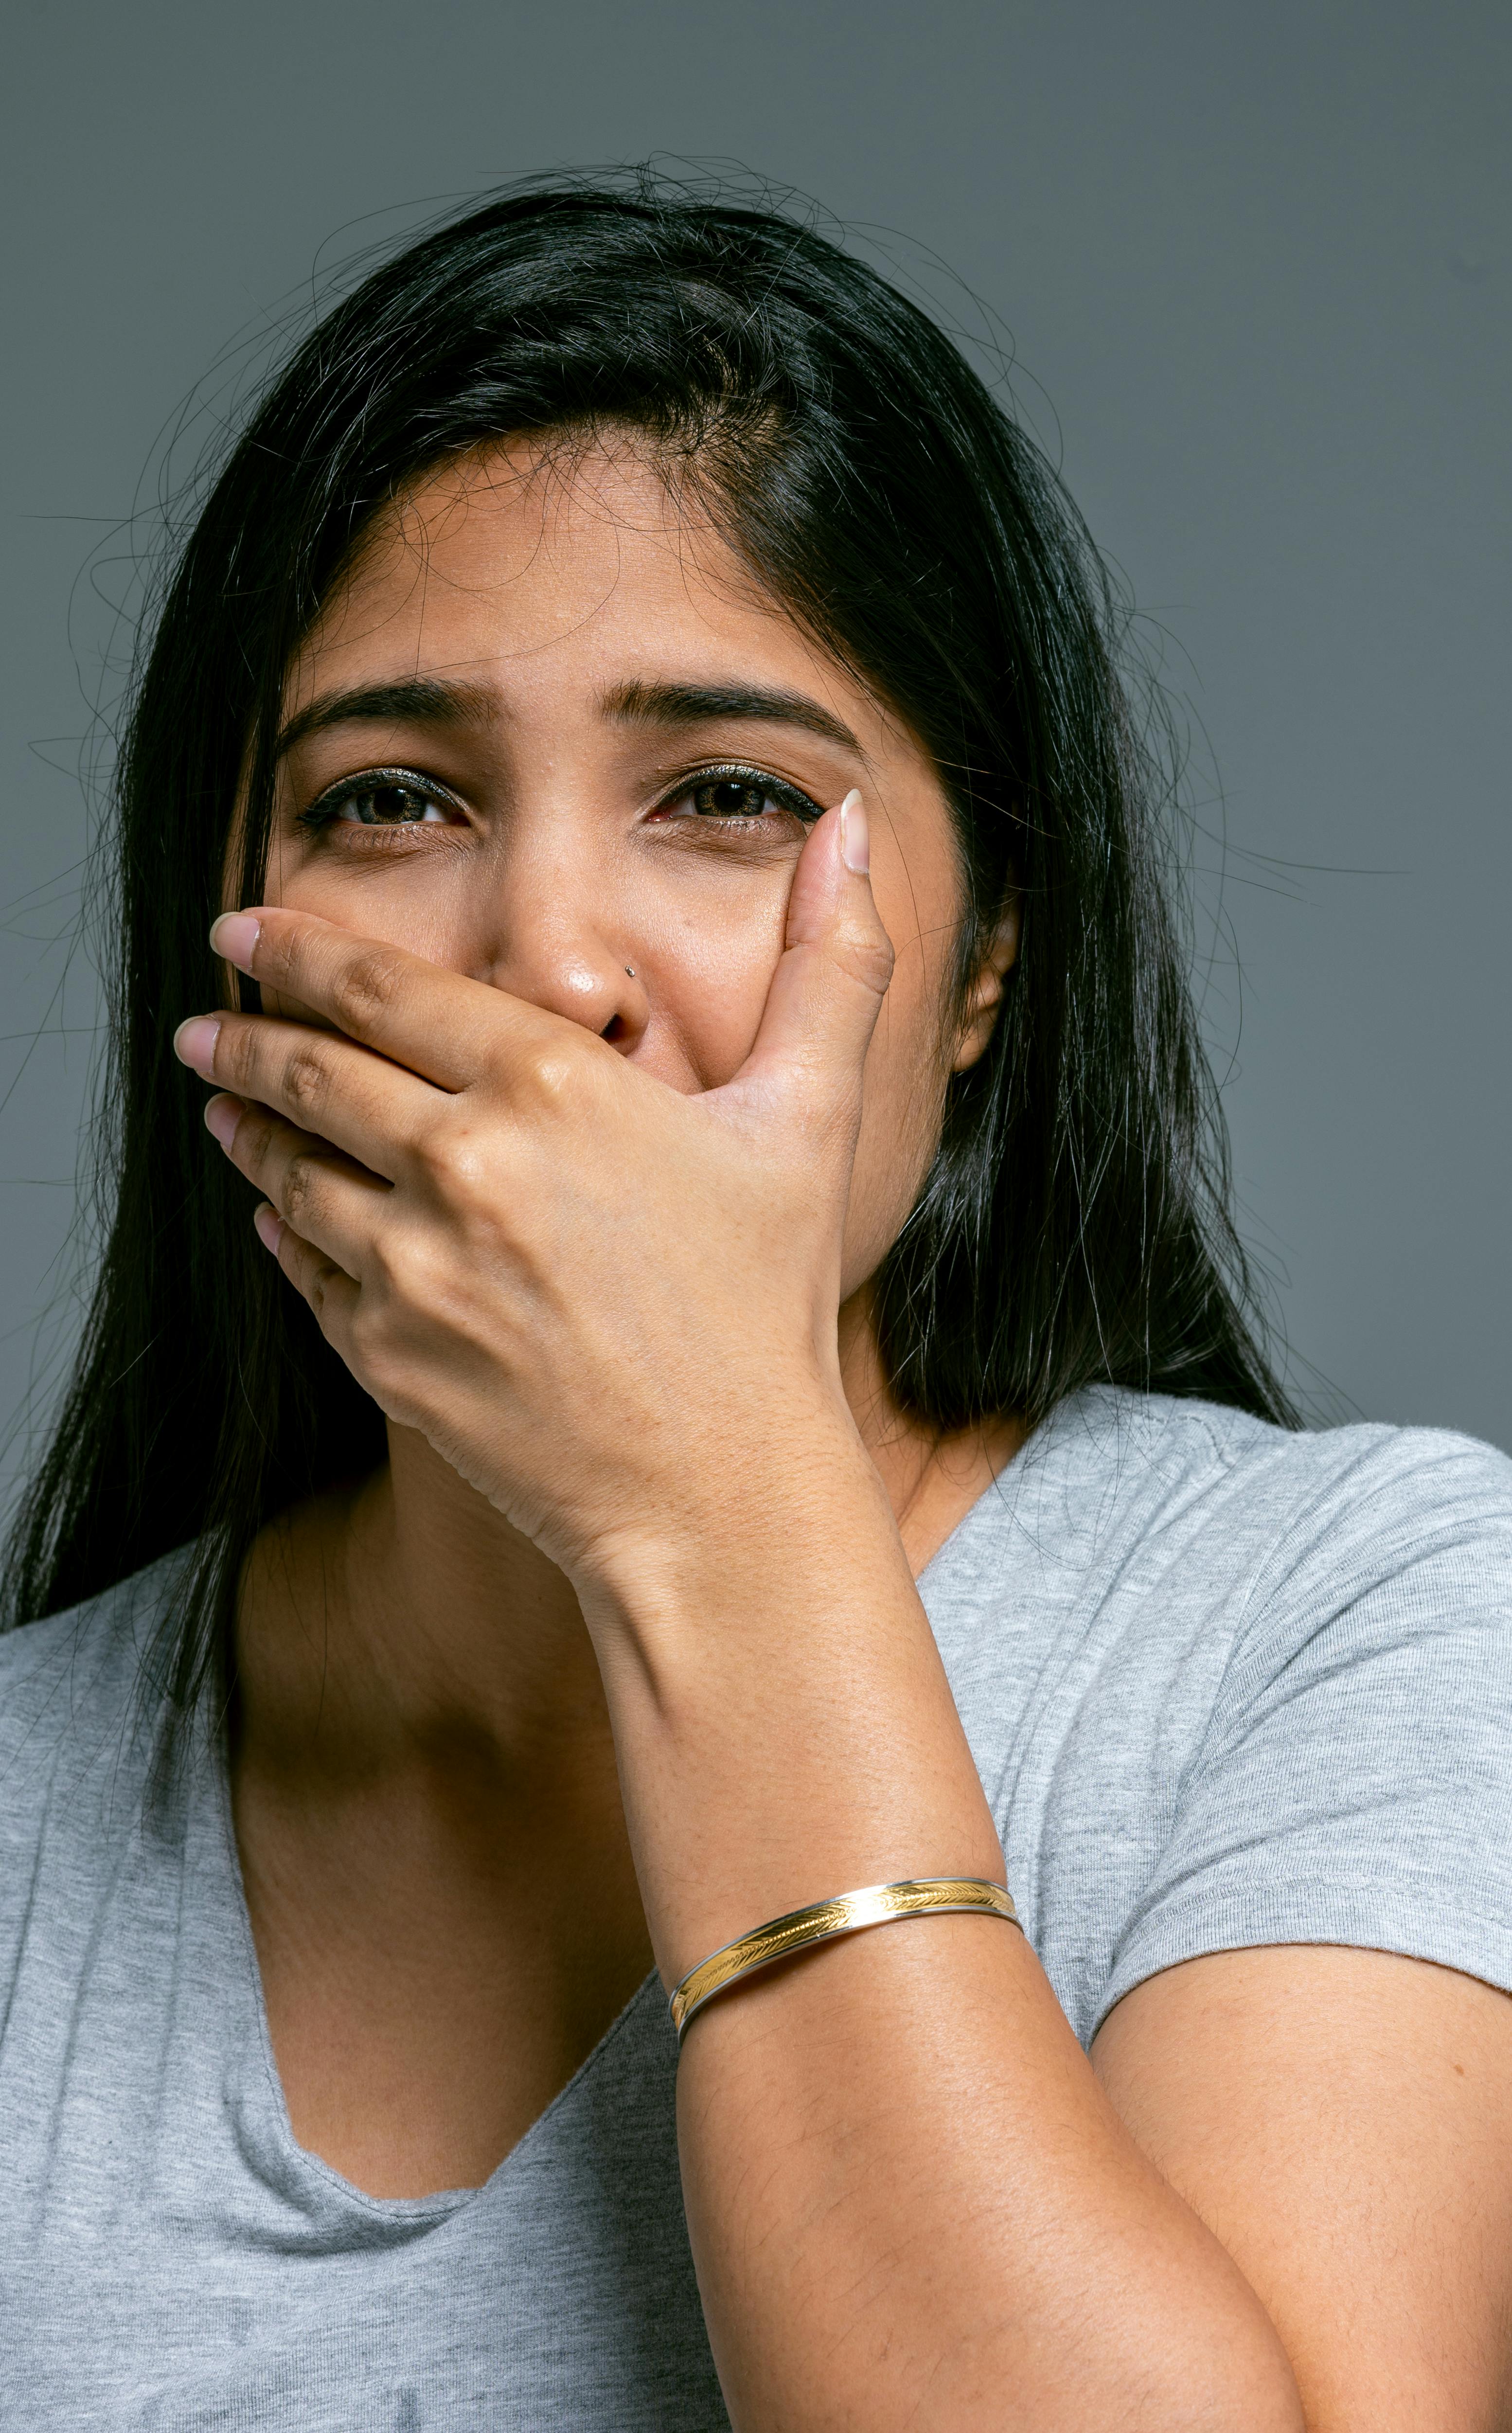 Une femme choquée retient difficilement ses larmes | Source : Pexels